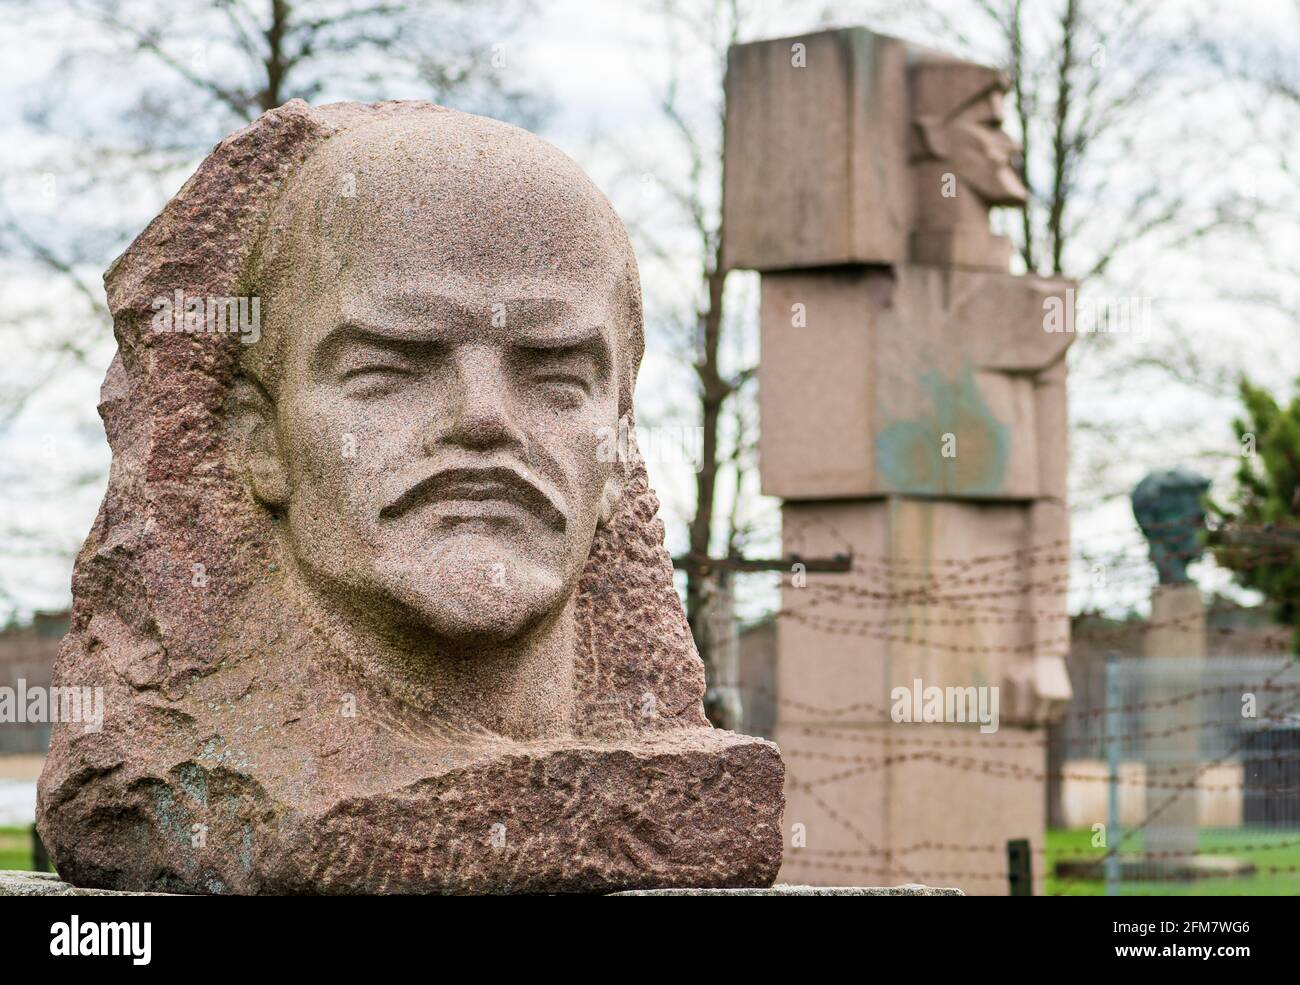 Buste en marbre de Lénine, révolutionnaire russe, homme politique, président du Conseil des commissaires du peuple de l'Union soviétique Banque D'Images